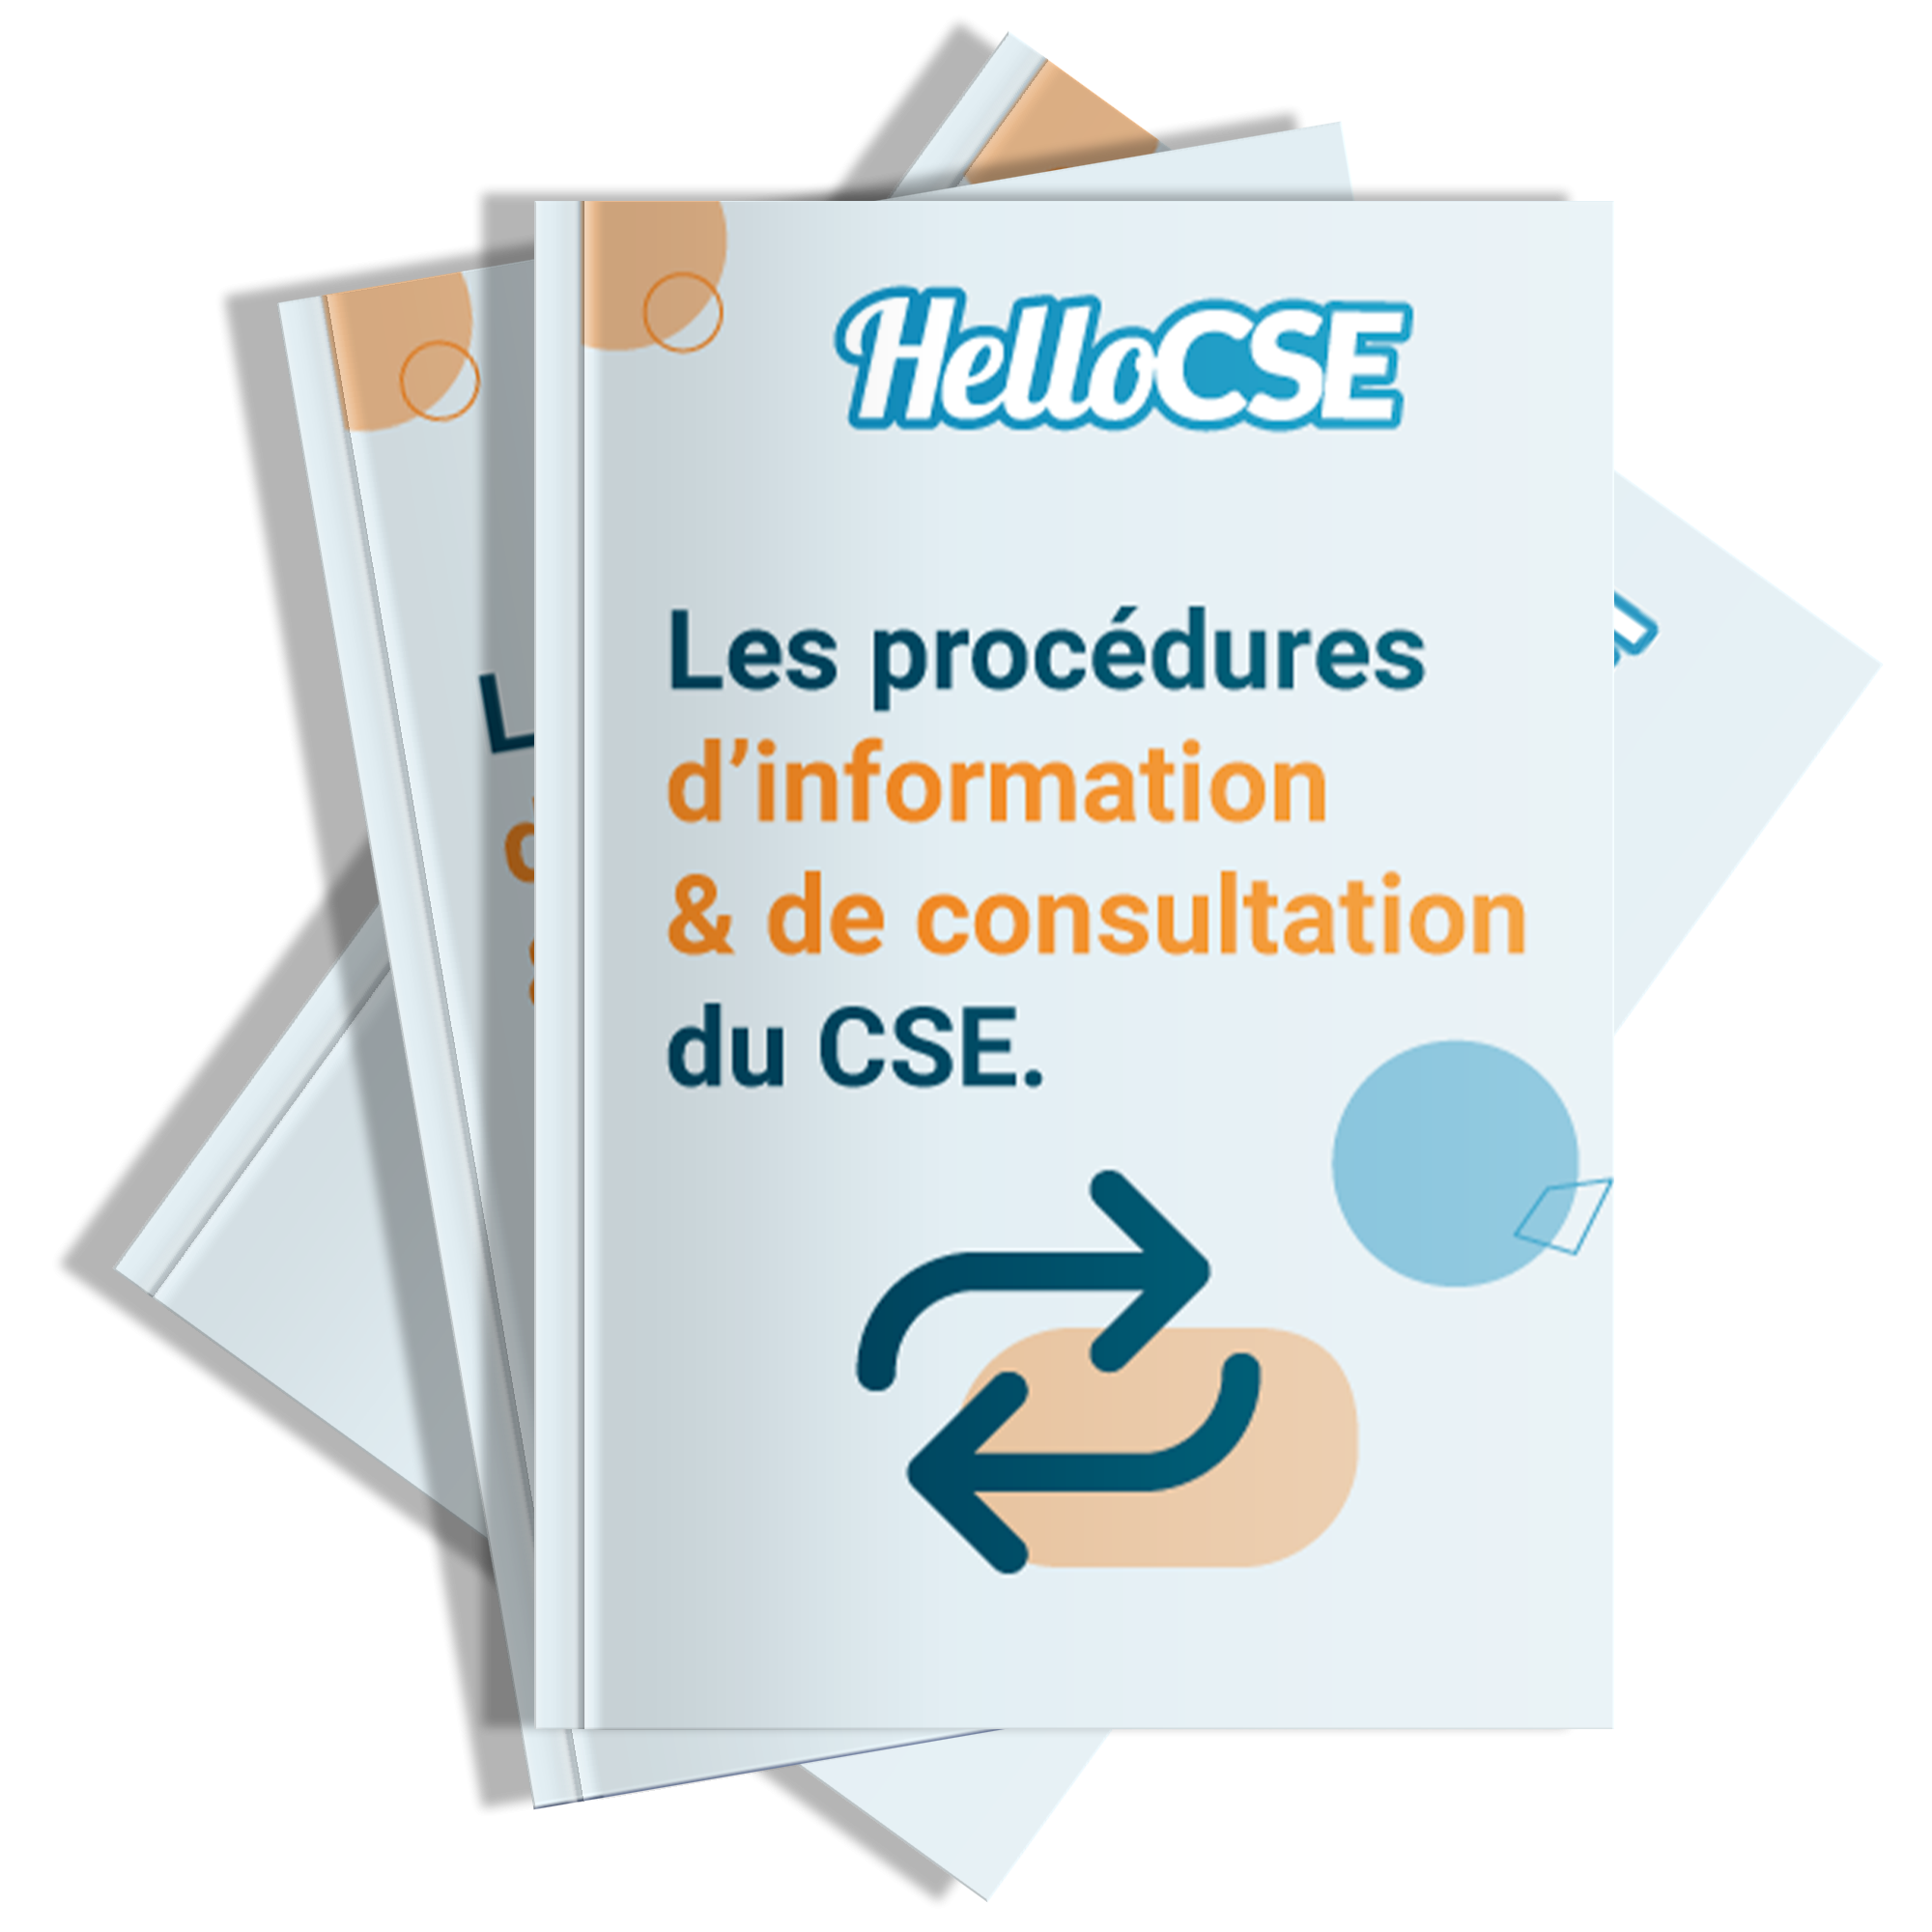 Les procédures d'information & de consultation du CSE